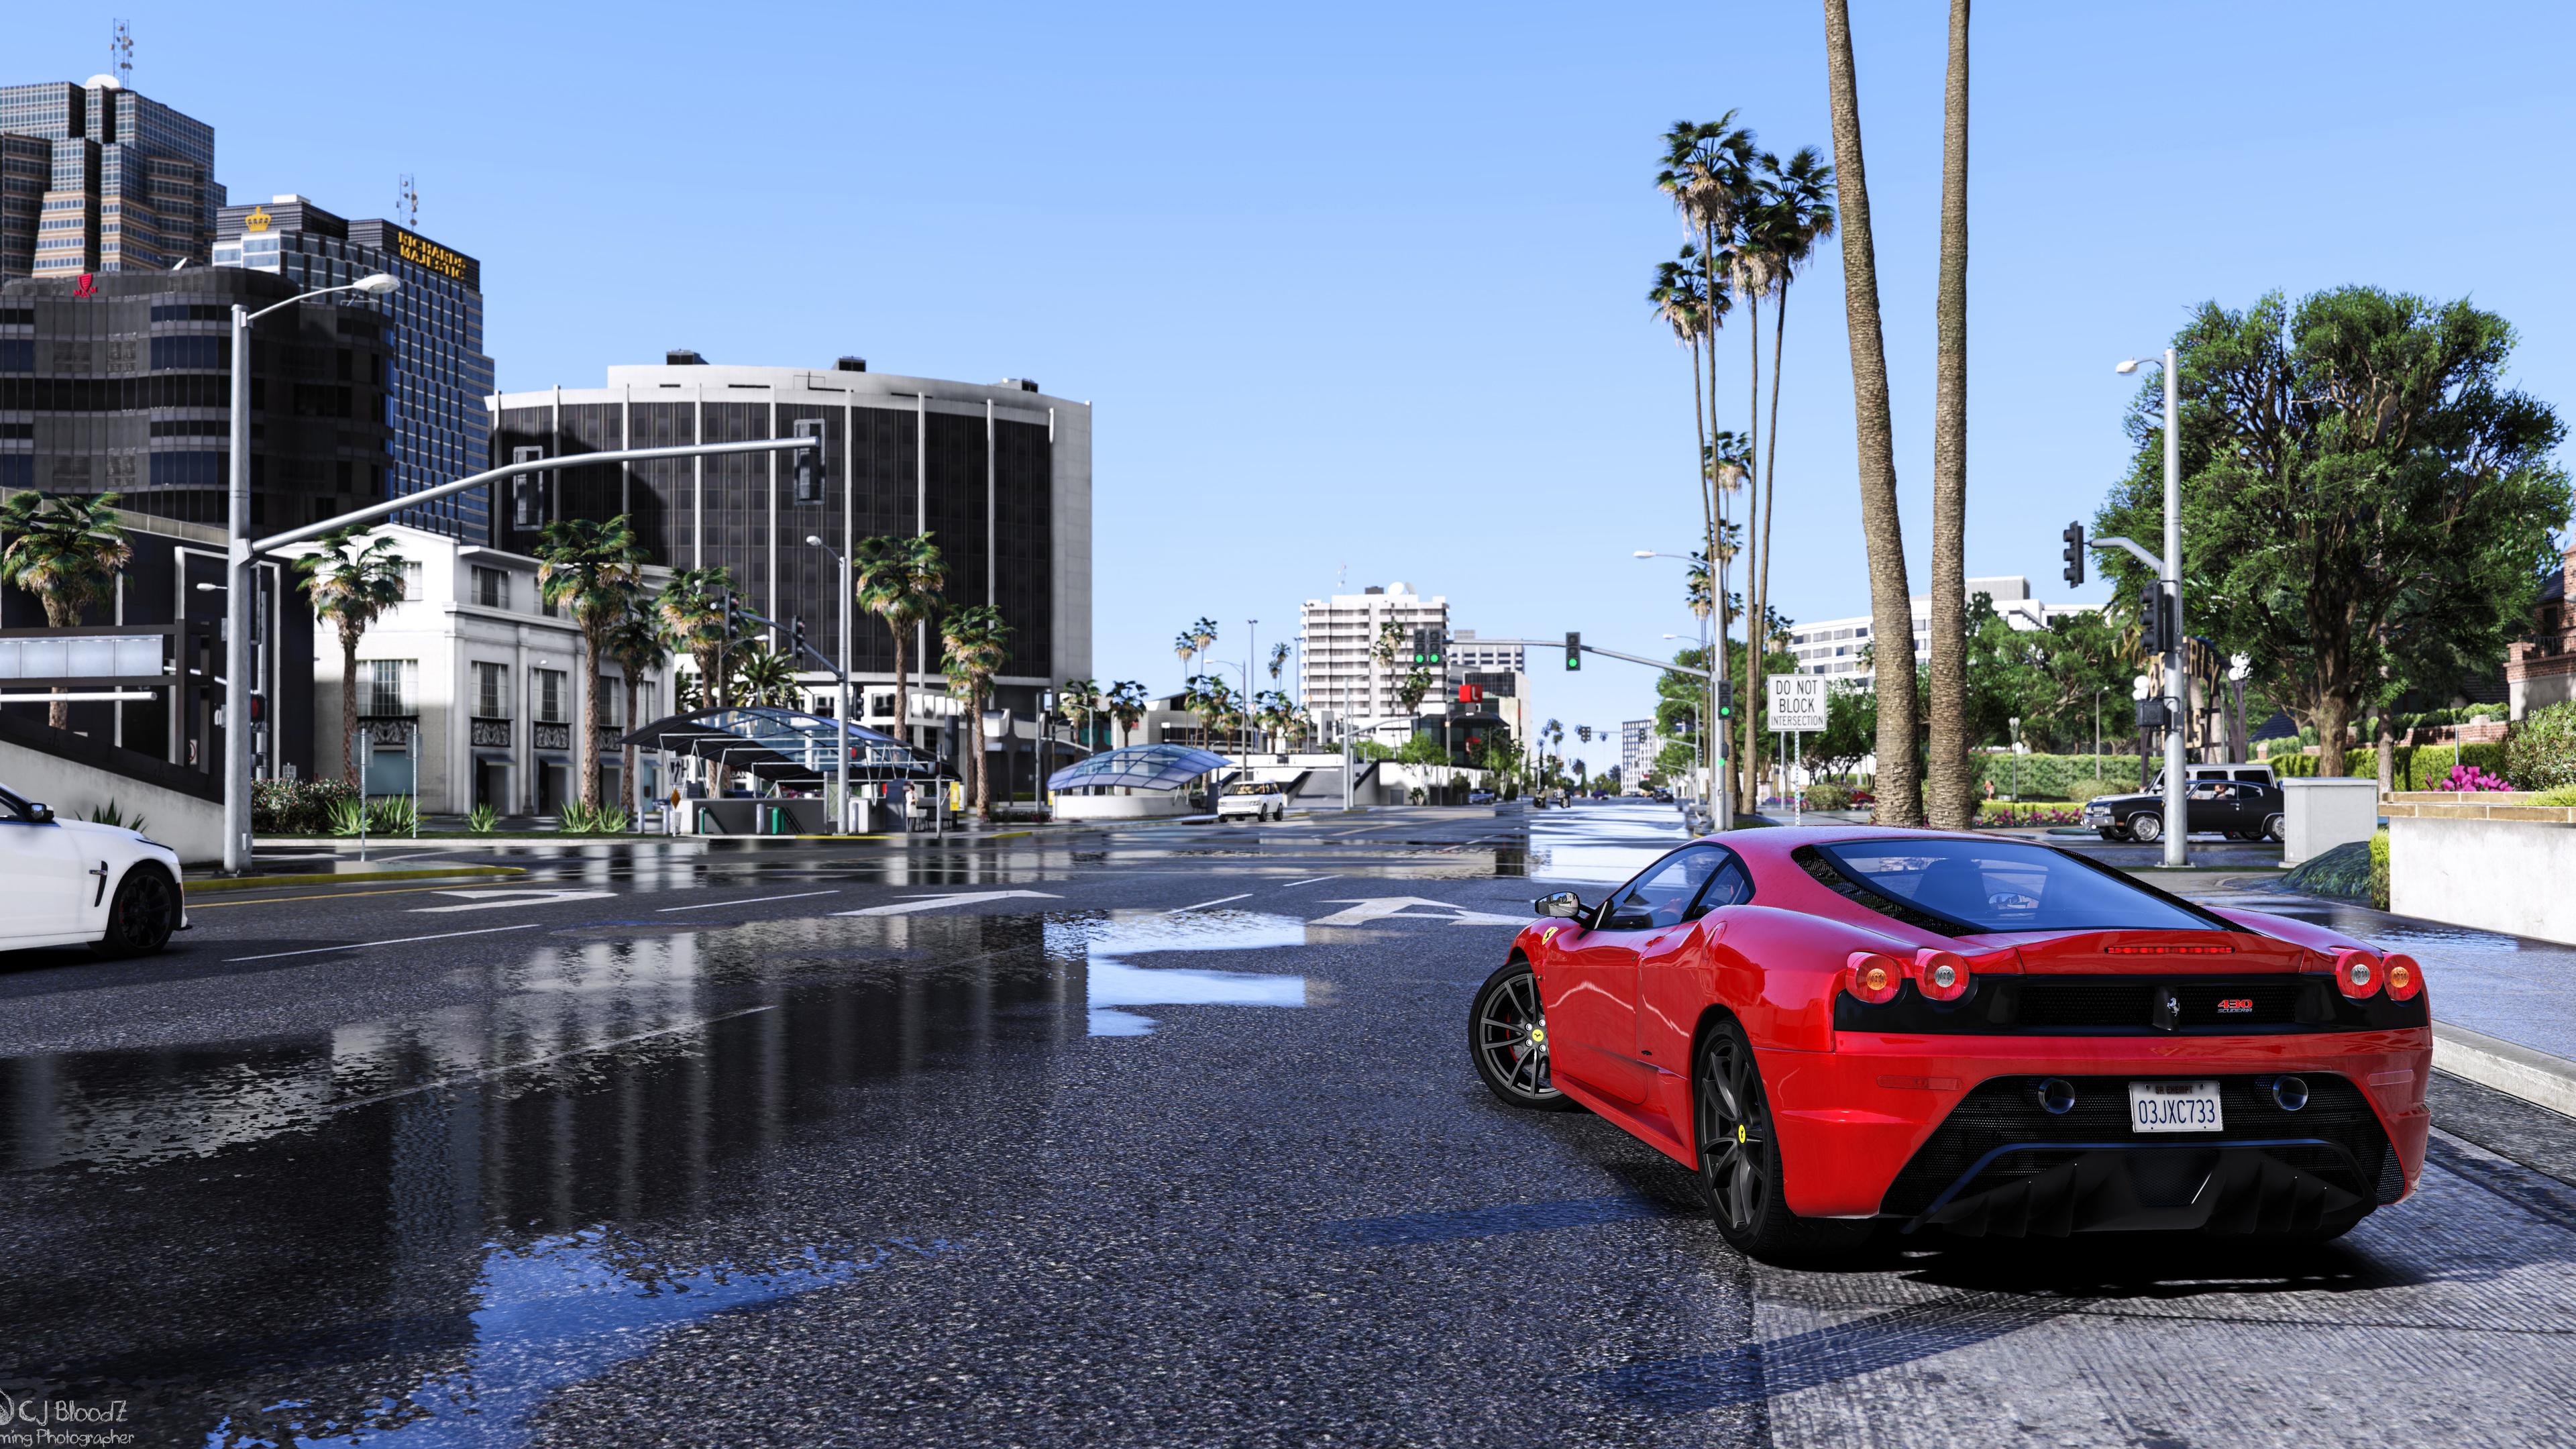 Thưởng thức hình nền GTA V với độ phân giải 4K sẽ khiến bạn rơi vào thế giới tuyệt đẹp của Los Santos và Blaine County. Hình ảnh sắc nét, chi tiết đến từng chi tiết sẽ khiến bạn cảm thấy như đang sống trong thế giới của nhân vật yêu thích của bạn.